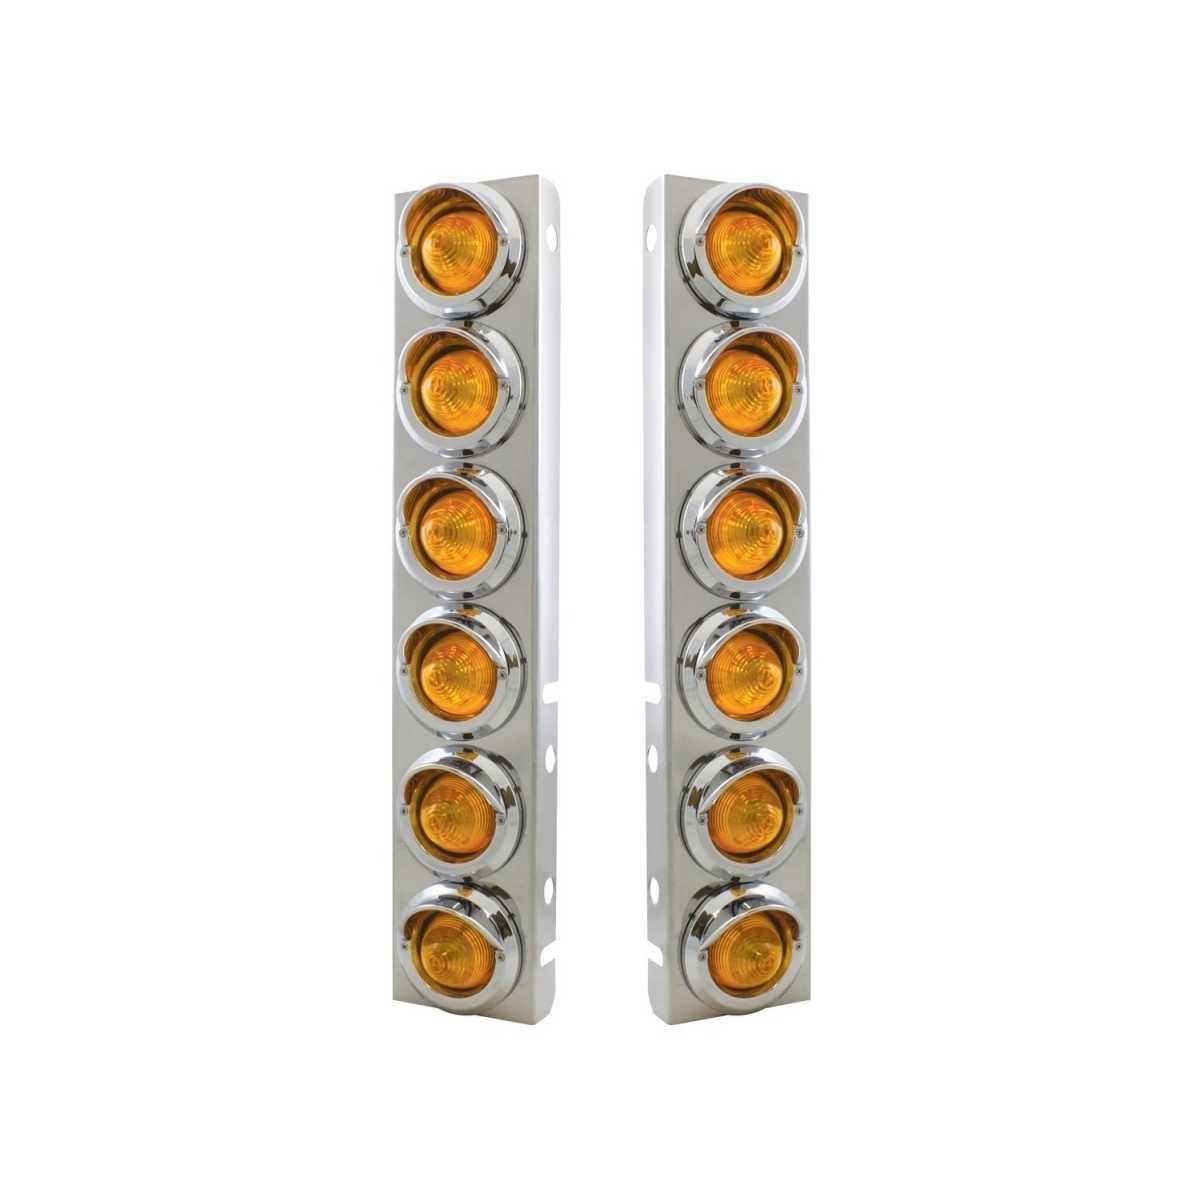 Peterbilt Air Cleaner Bracket w/ Beehive Lights & Visors - Amber LED/Amber Lens